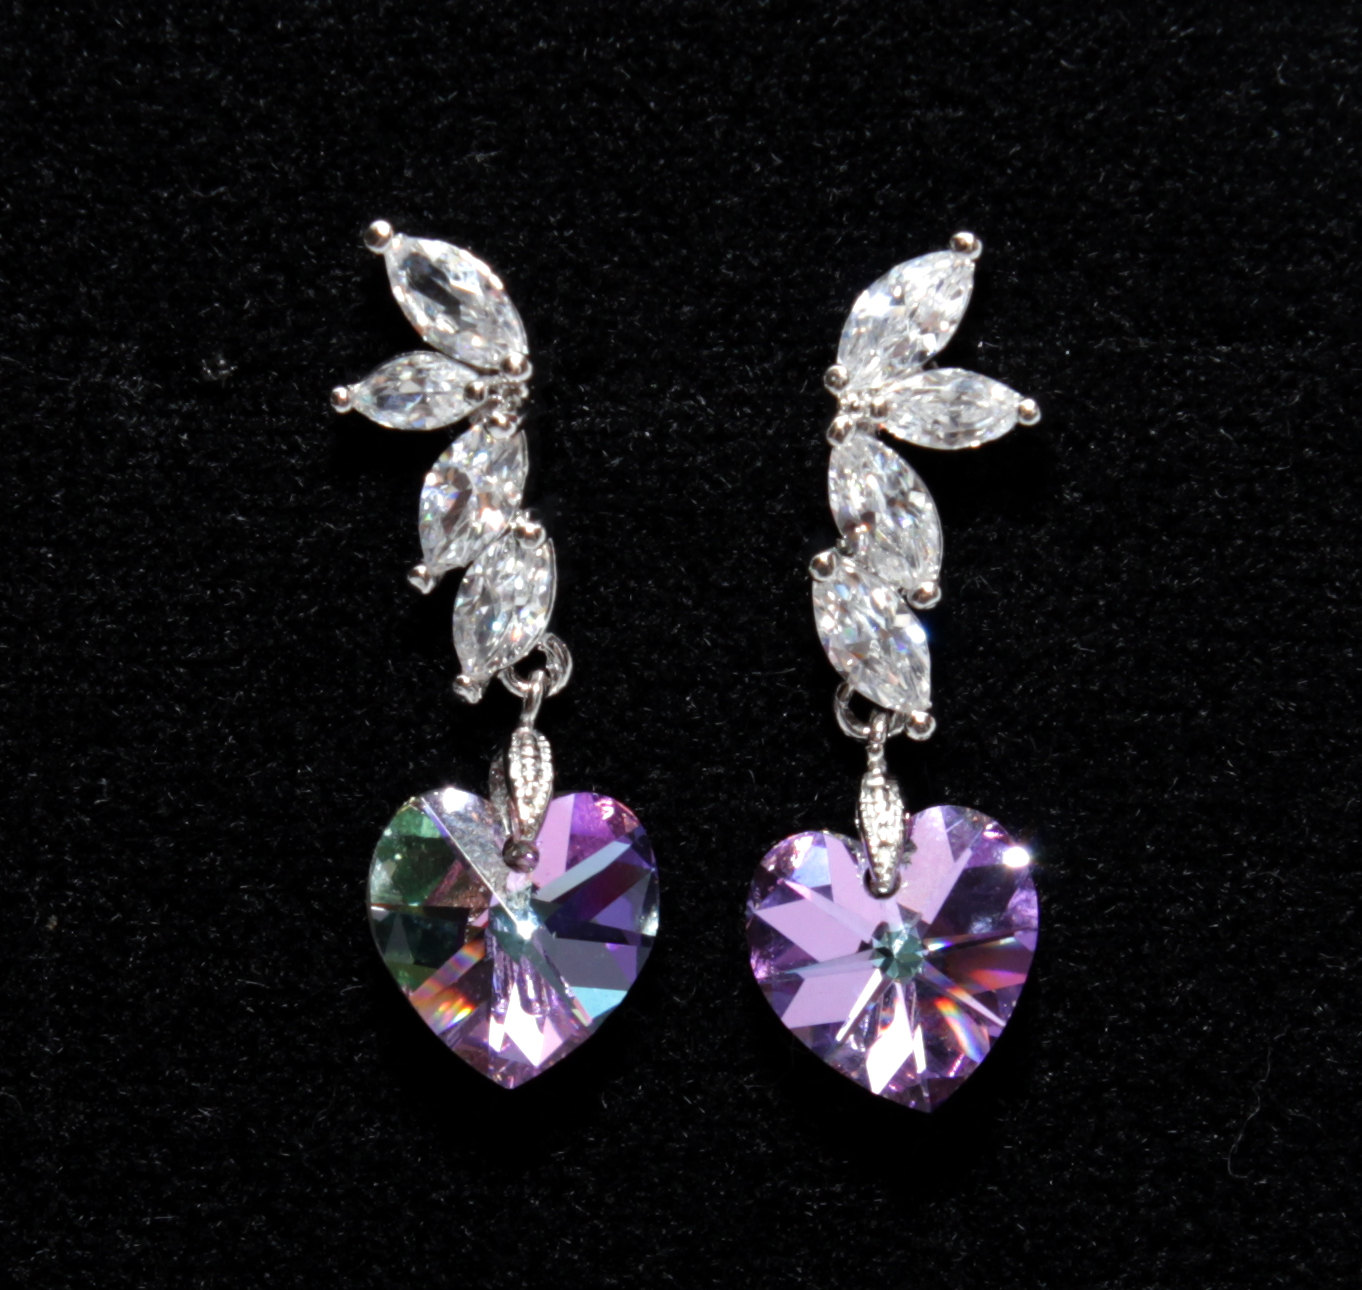 Lavender Drop Earrings from Glitz & Love